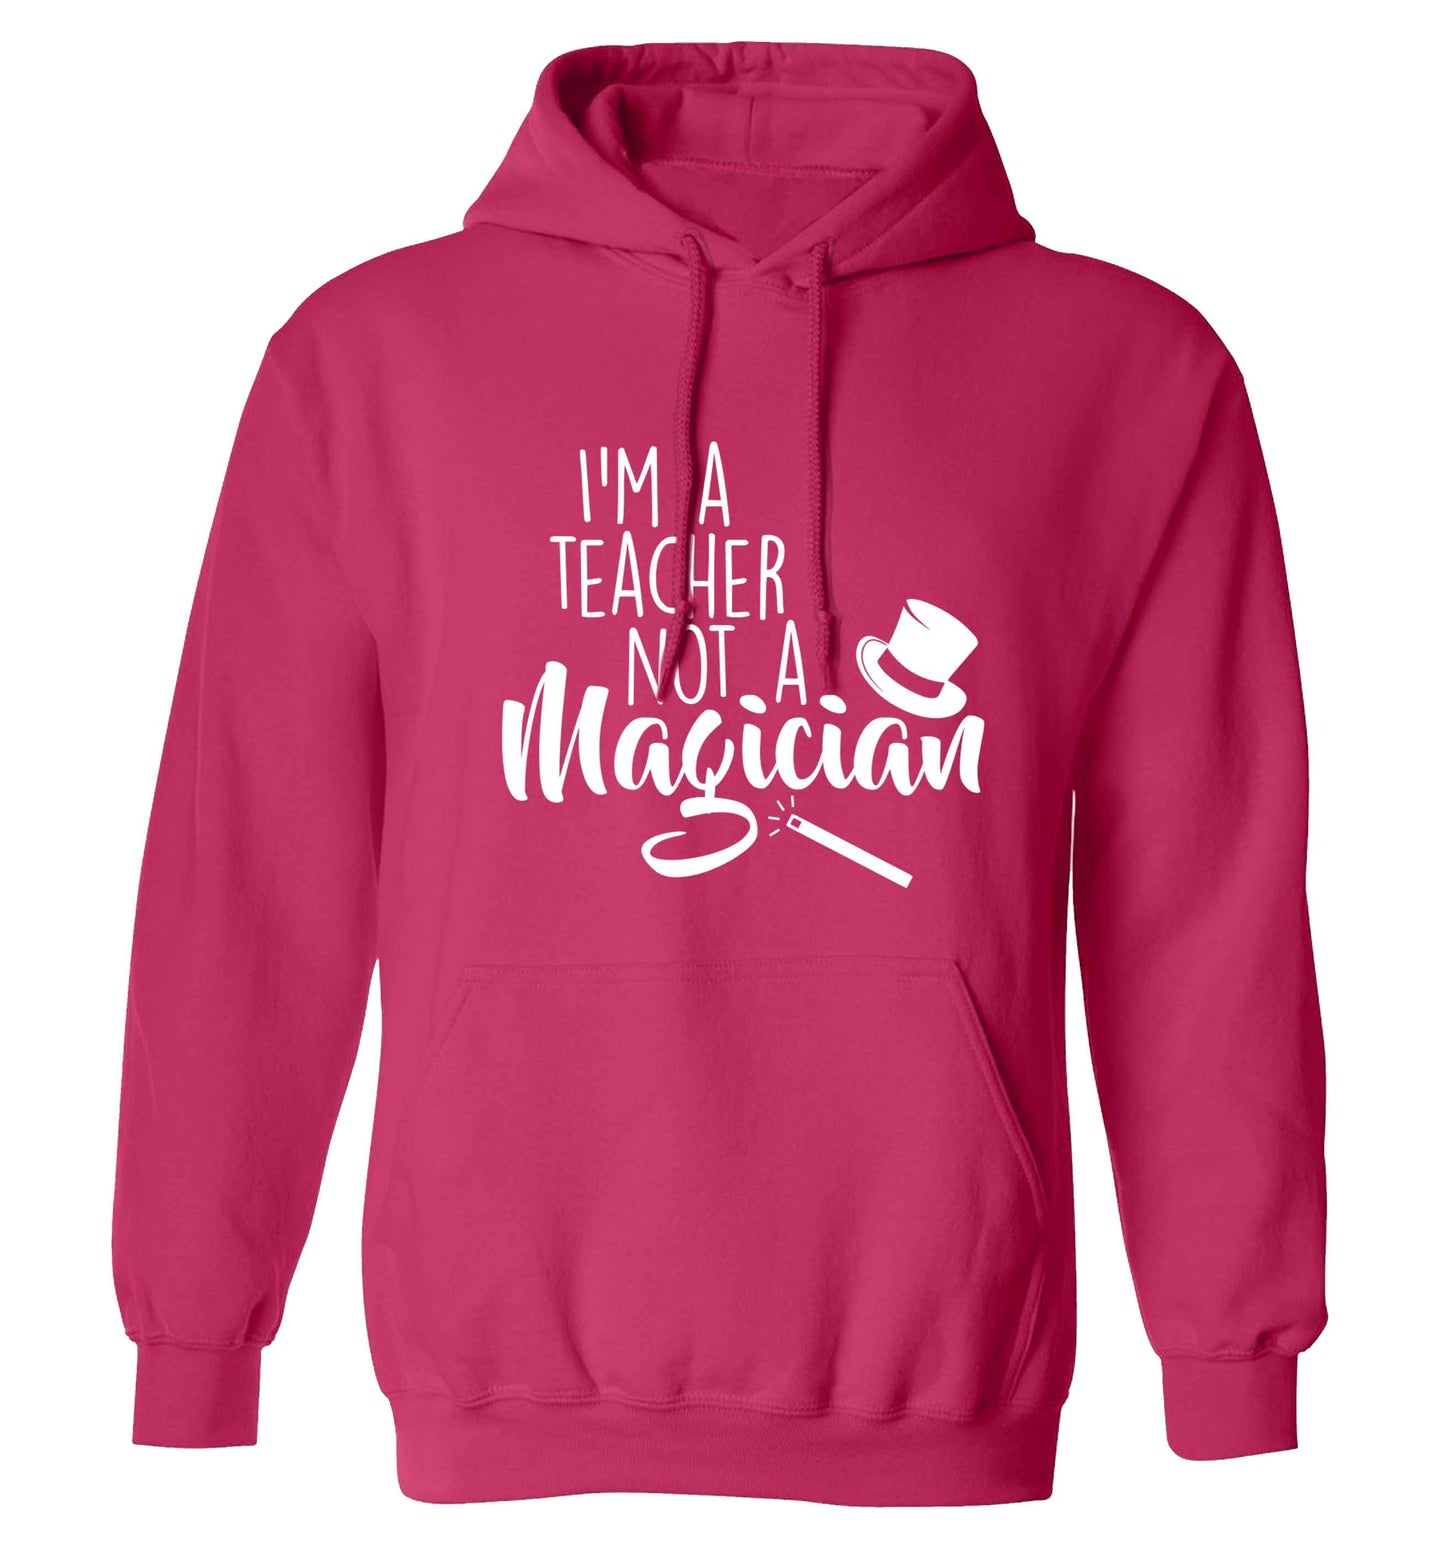 I'm a teacher not a magician adults unisex pink hoodie 2XL